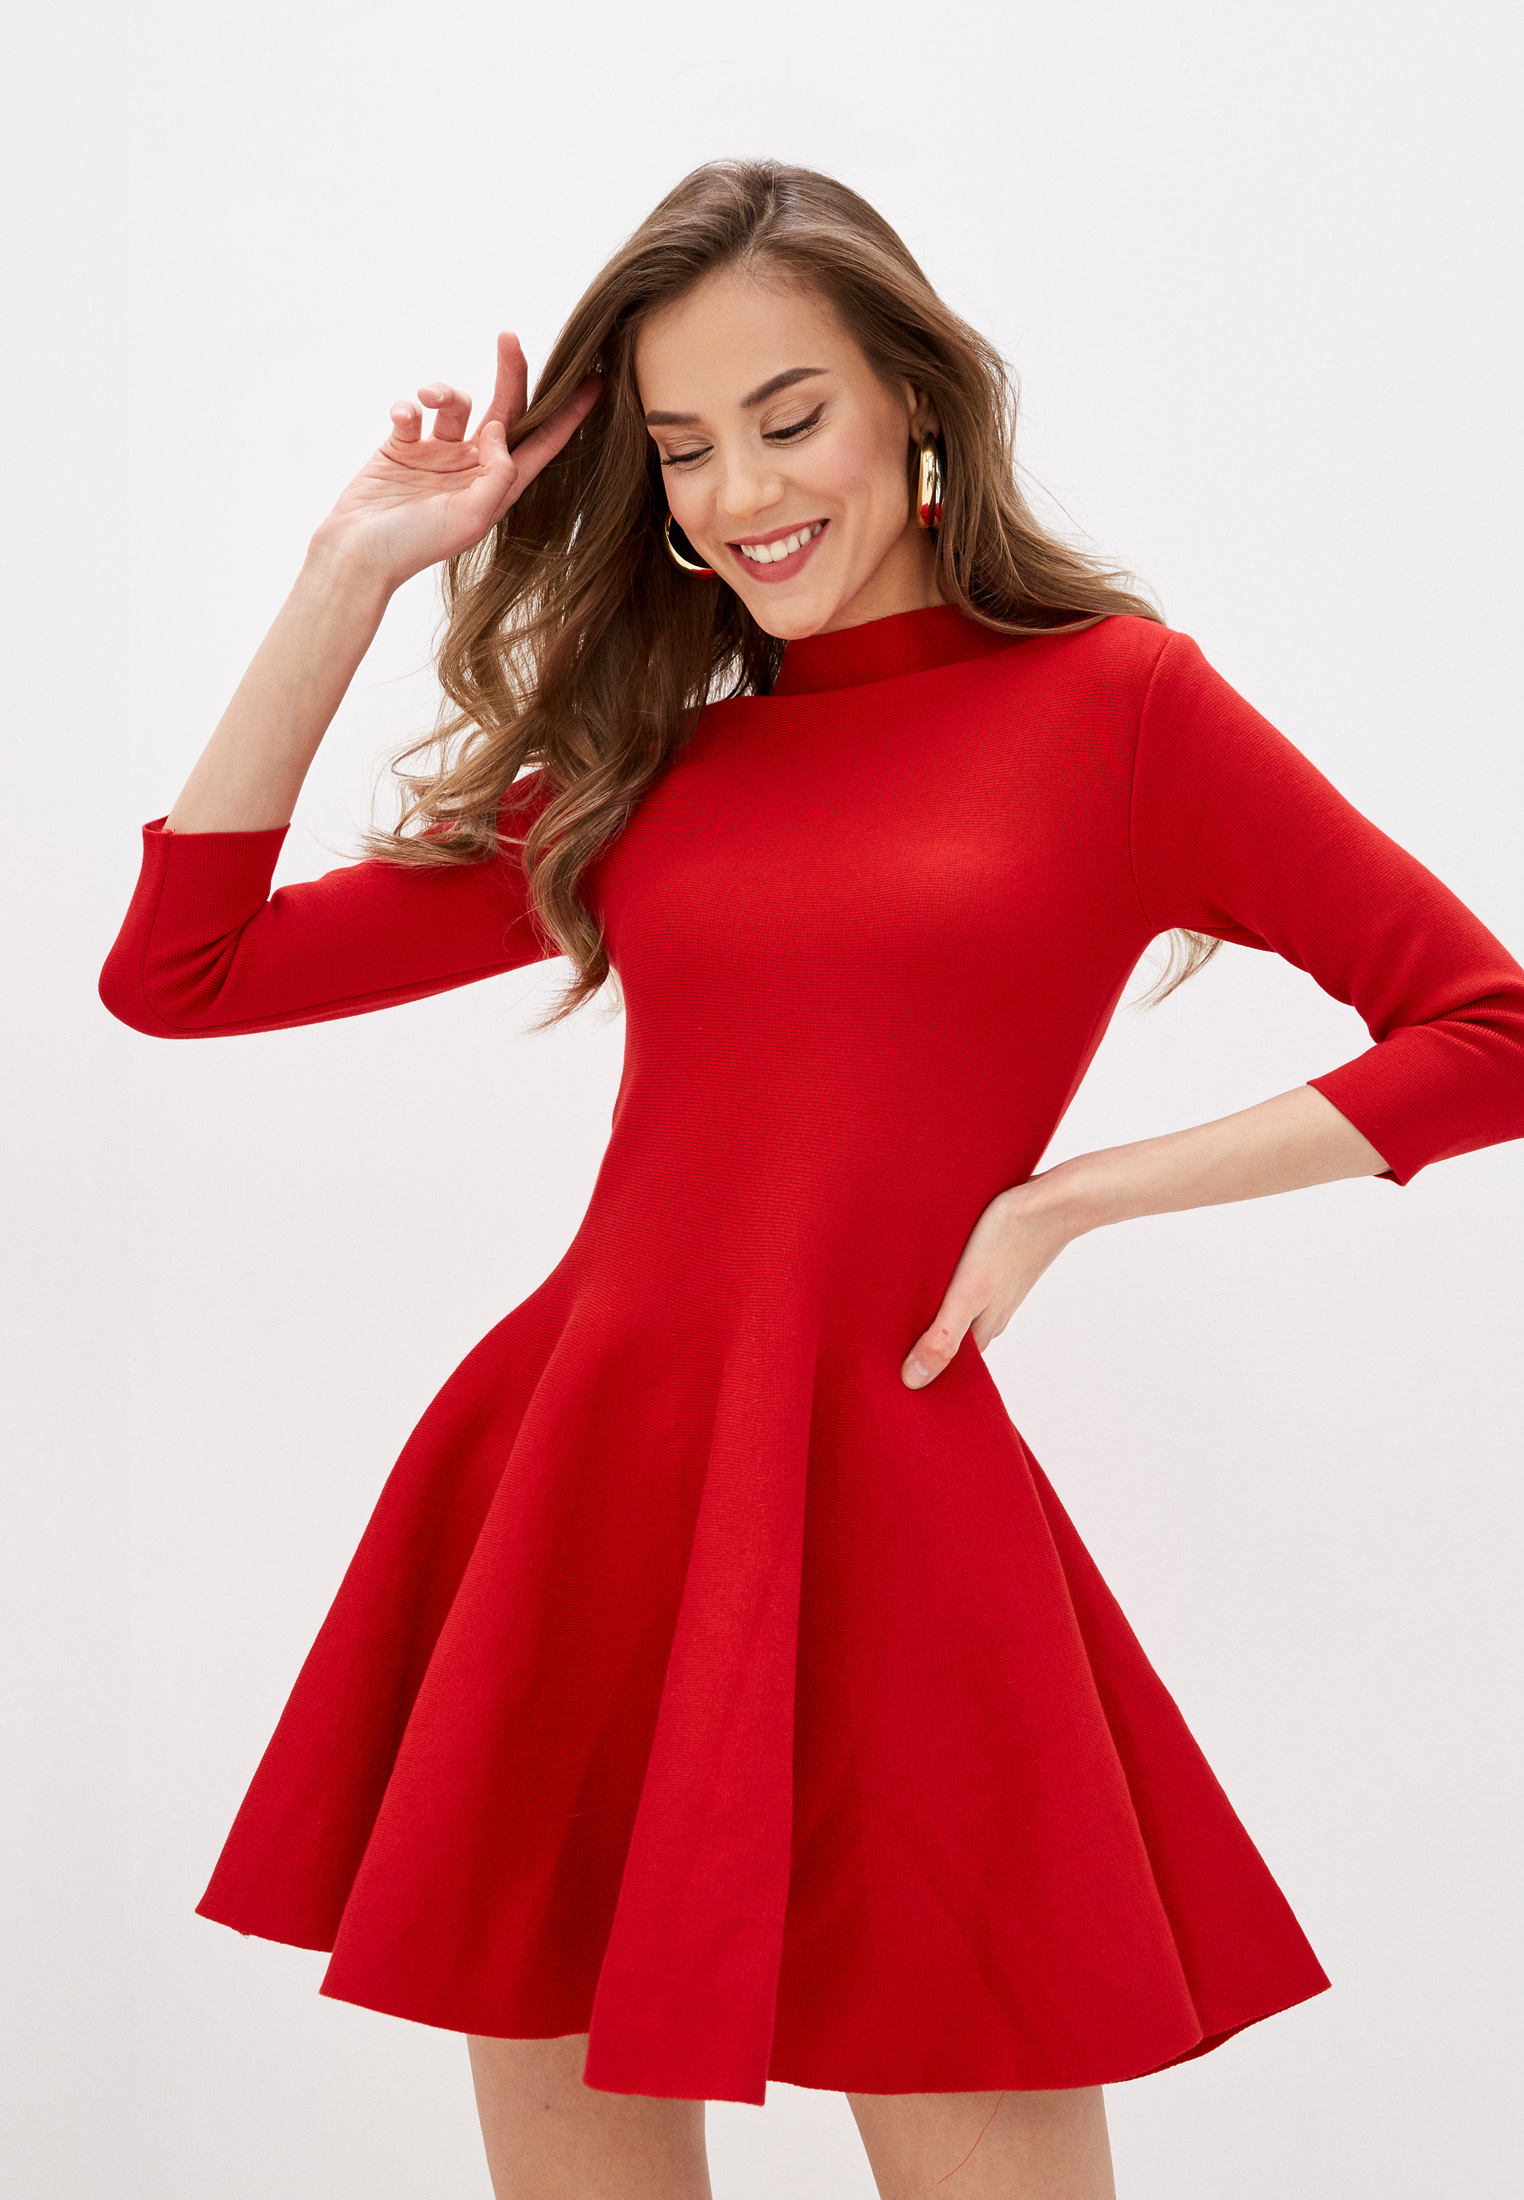 Показать красное платье